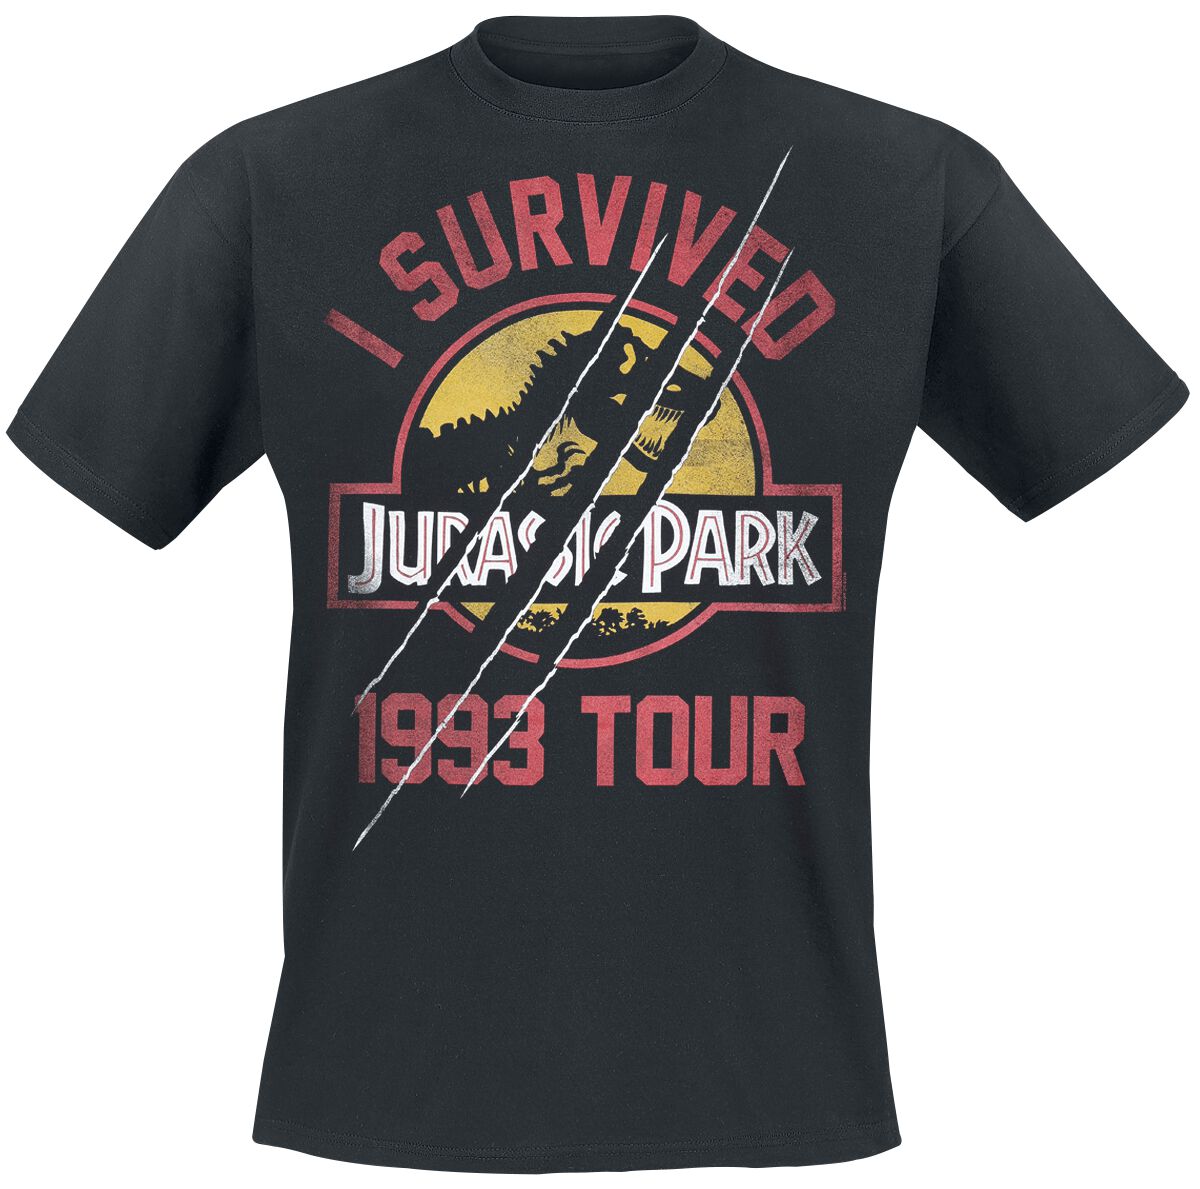 Jurassic Park T-Shirt - I Survived 1993 Tour - S bis XXL - für Männer - Größe S - schwarz  - EMP exklusives Merchandise!